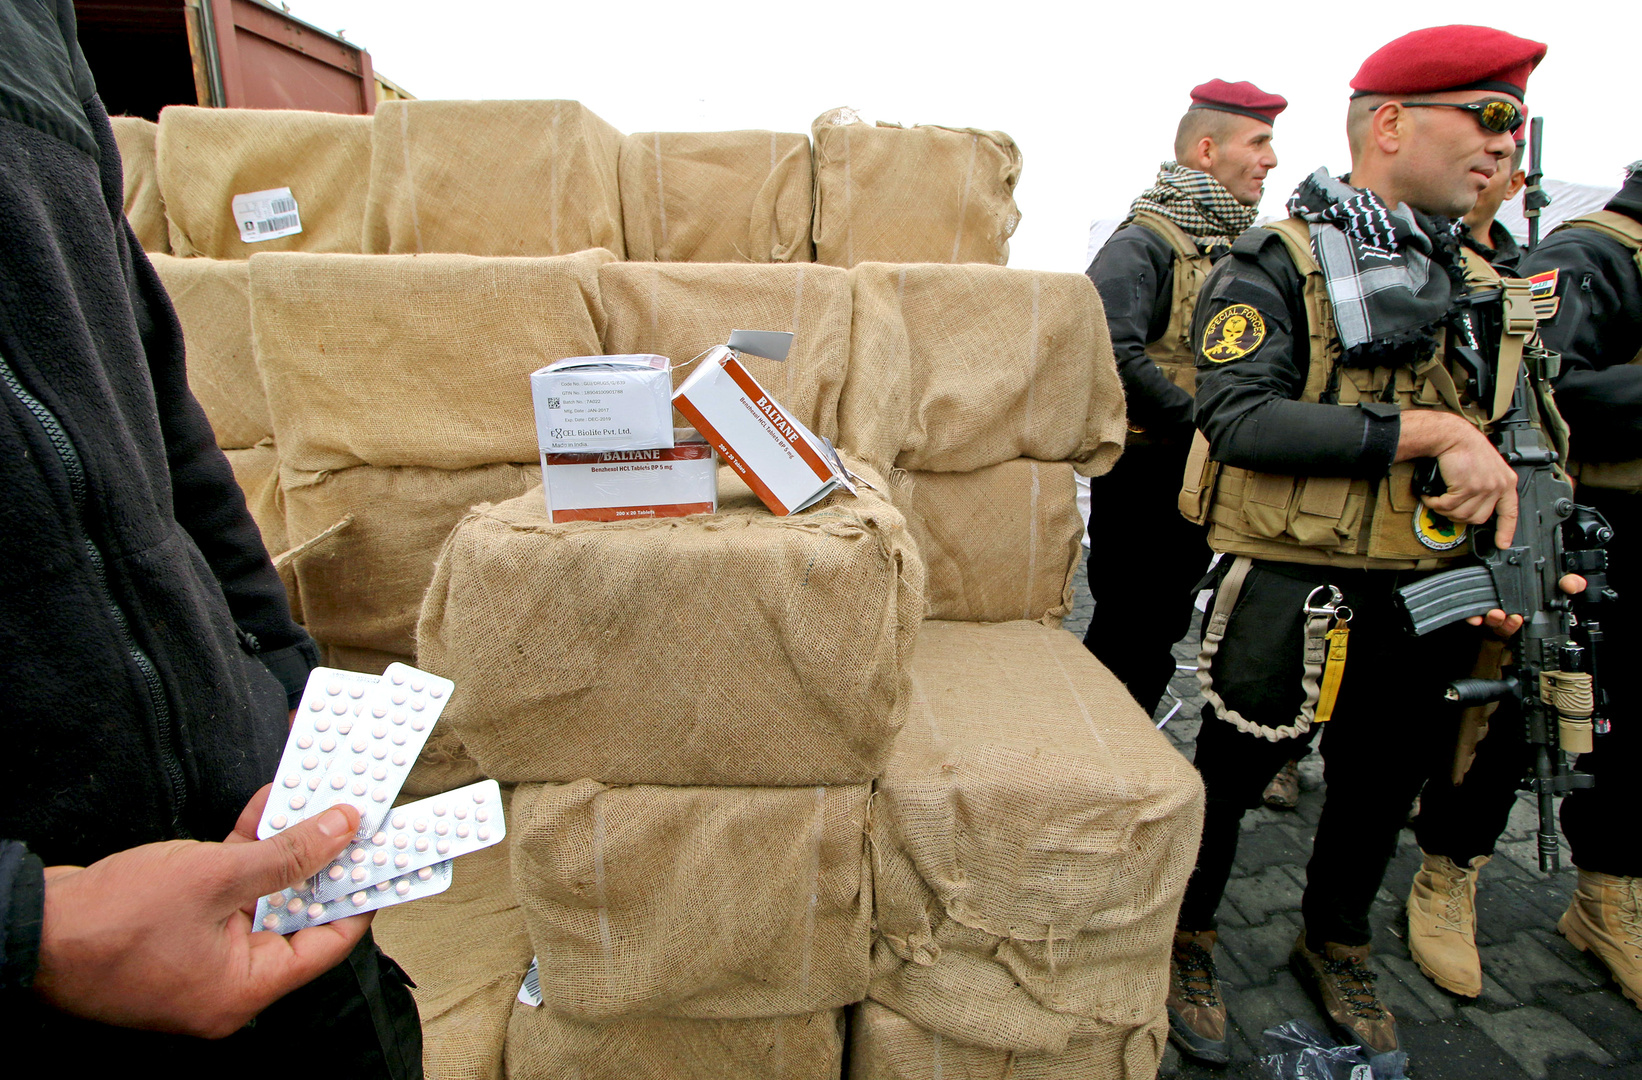 مع حظر التجوال.. المتاجرة بالمخدرات ترتفع في مدينة السُليمانية العراقية